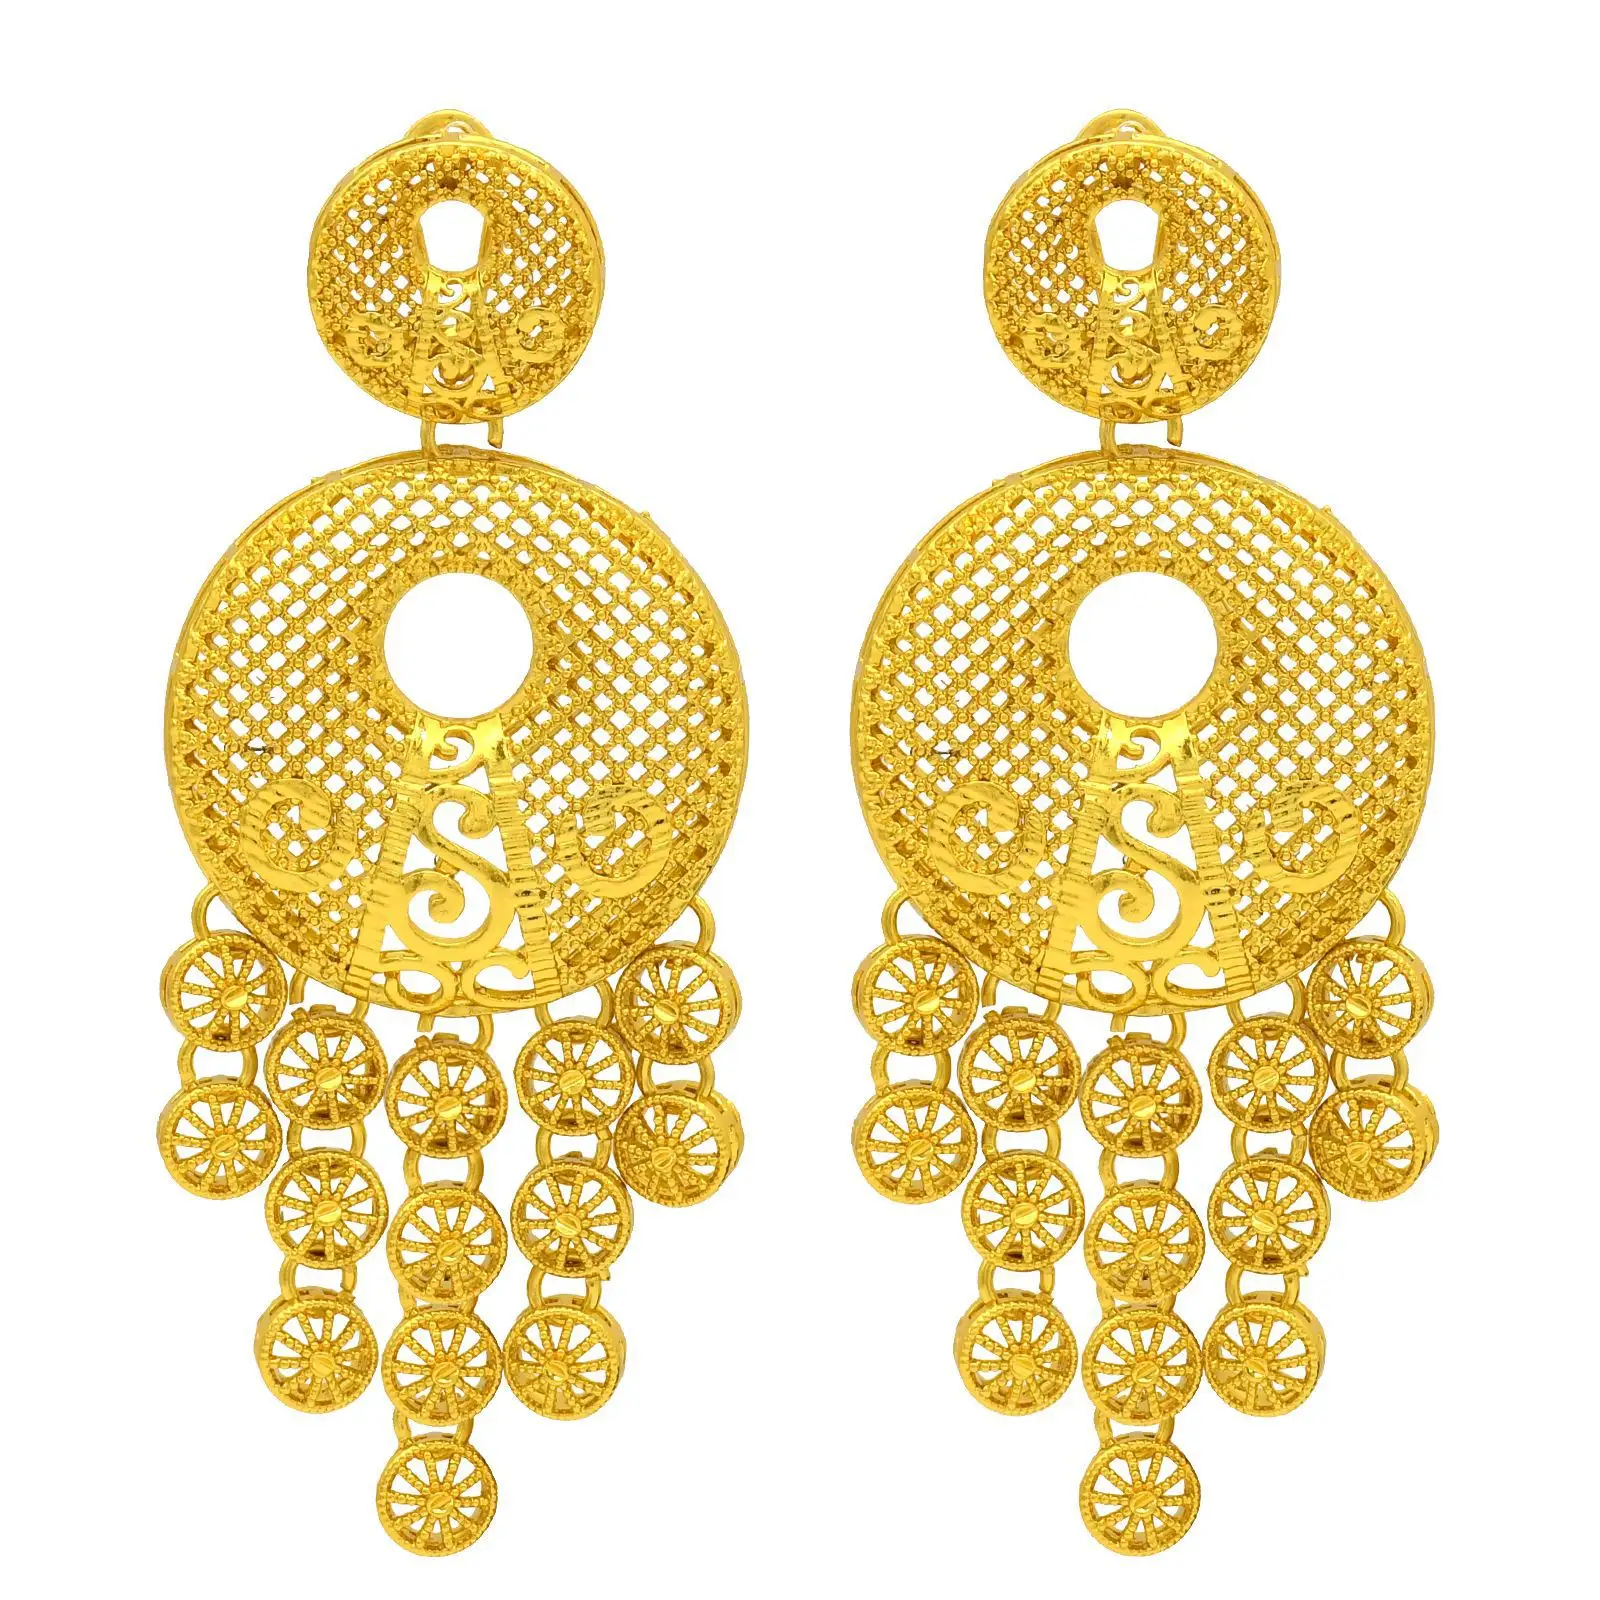 Versand agent Yiwu Schmuck Einkäufer afrikanischen Gold Ohrring kein verblassen goldenen Ohrring Schmuck